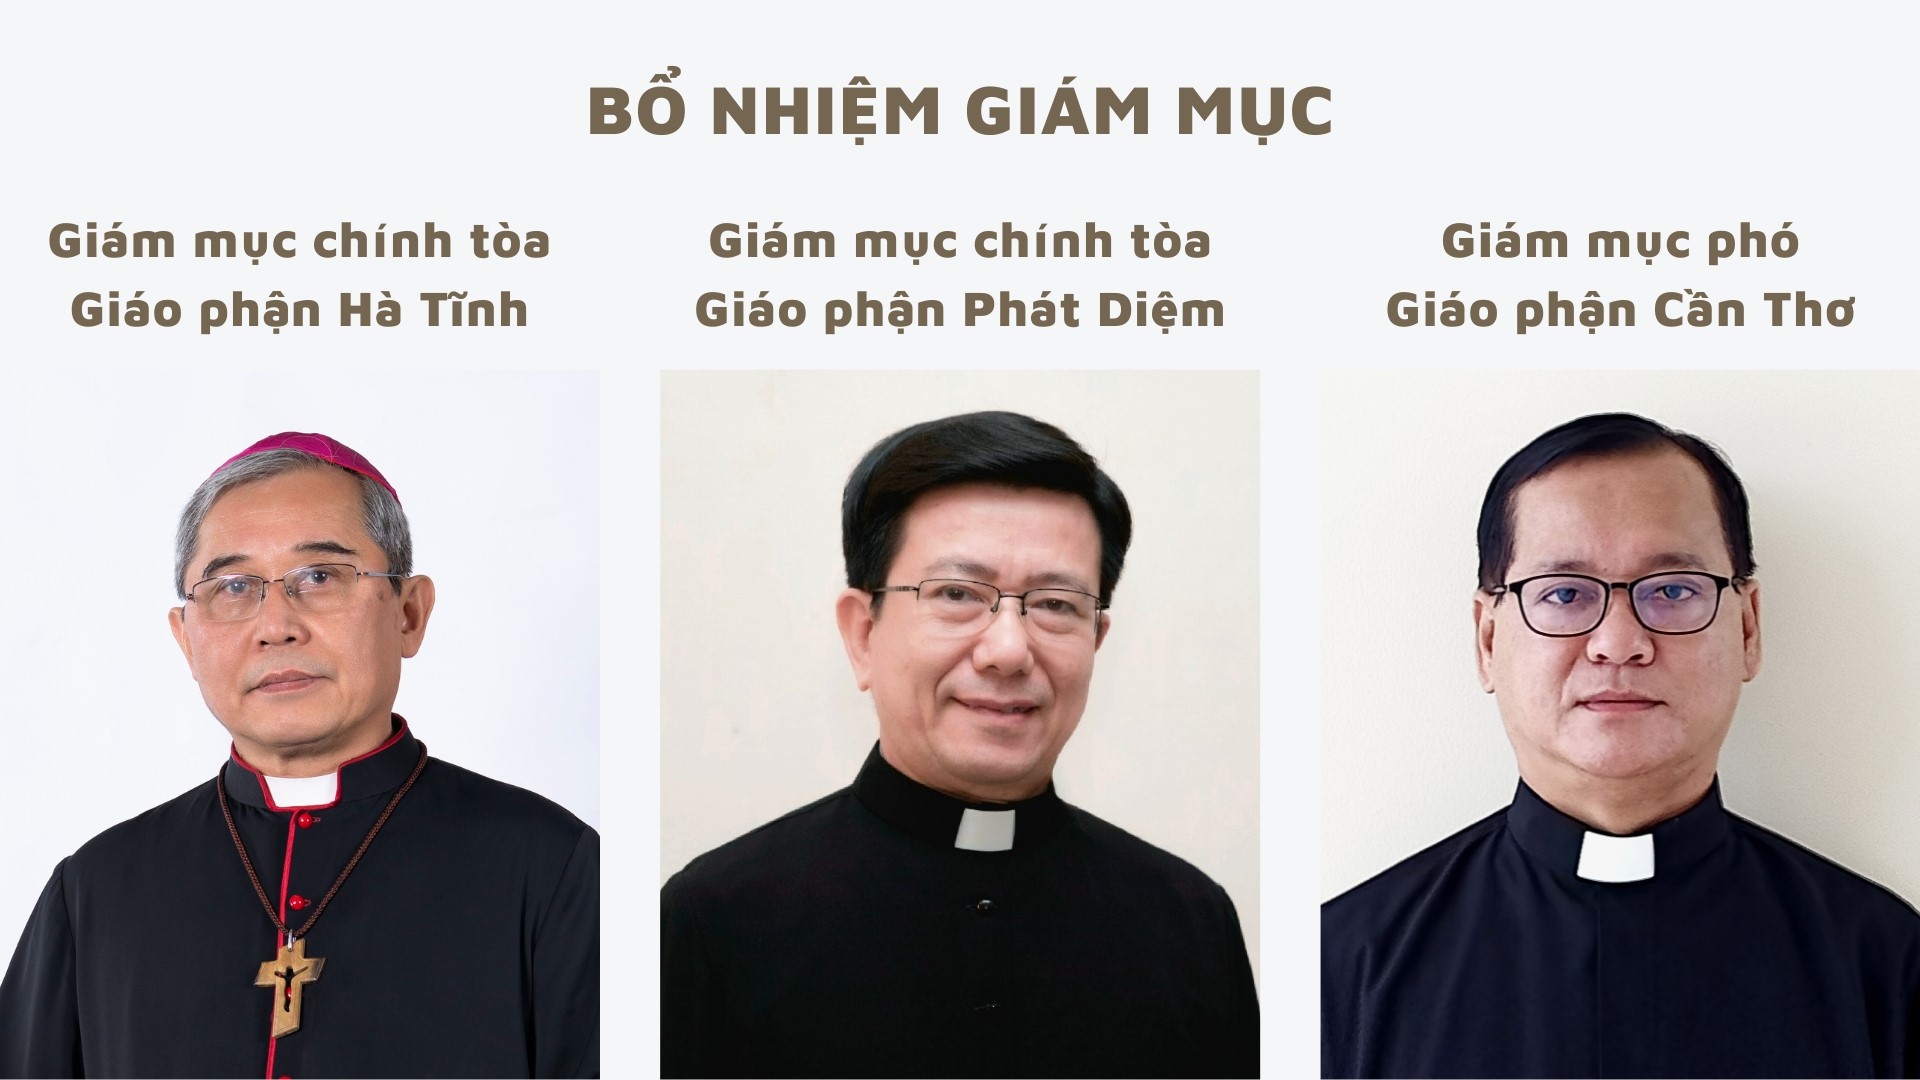 ĐTC bổ nhiệm GM Chính toà cho hai Giáo phận Hà Tĩnh và Phát Diệm và GM Phó cho Giáo phận Cần Thơ